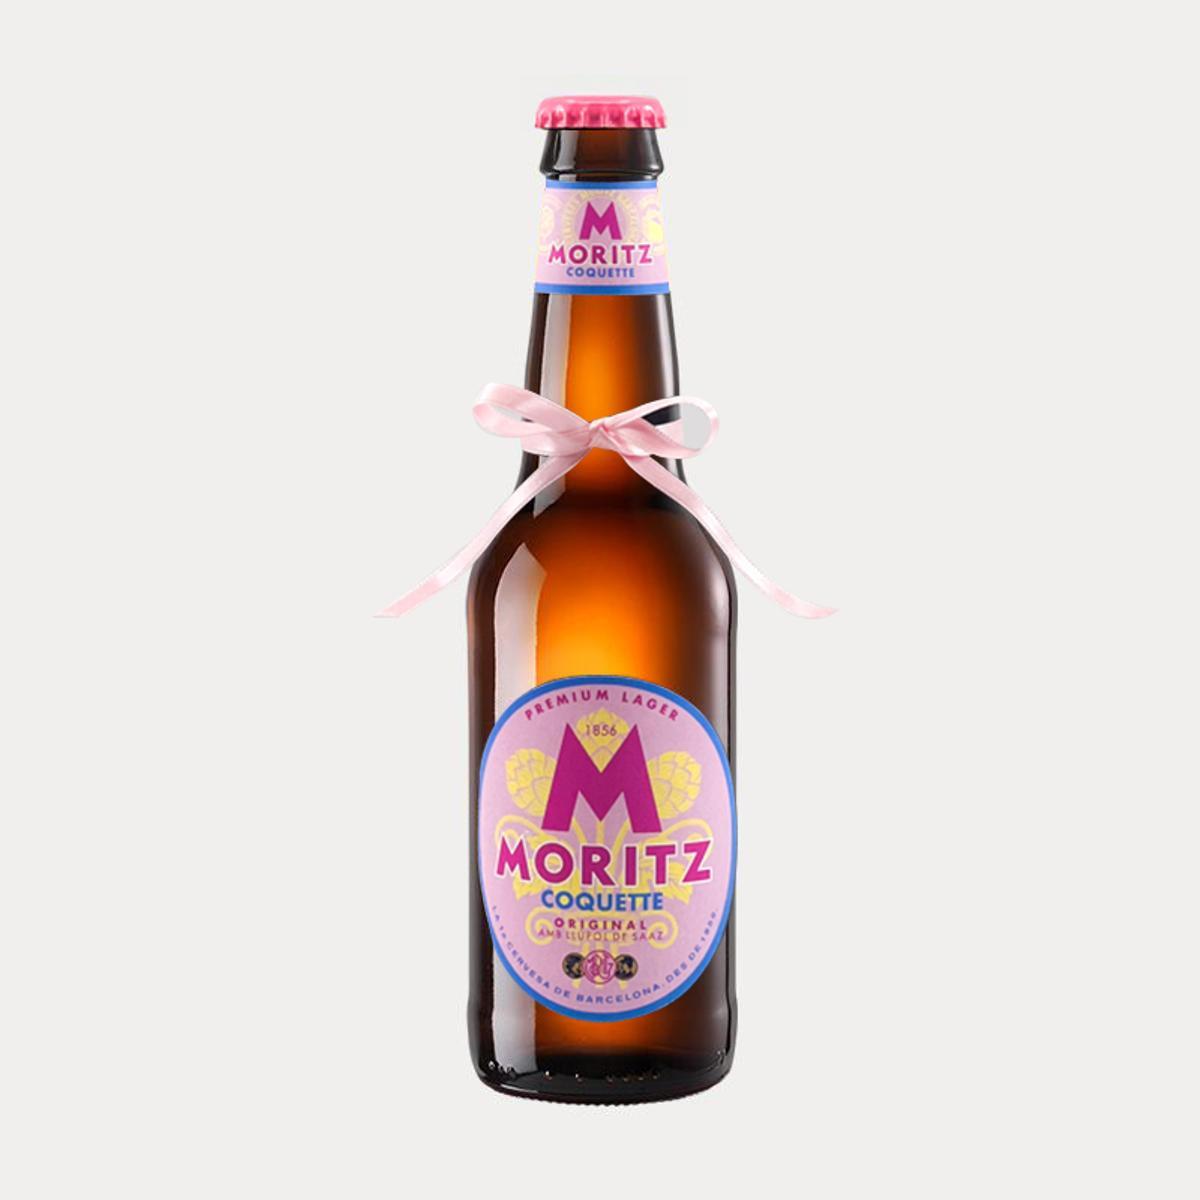 Edición 'coquette' de la cerveza Moritz.